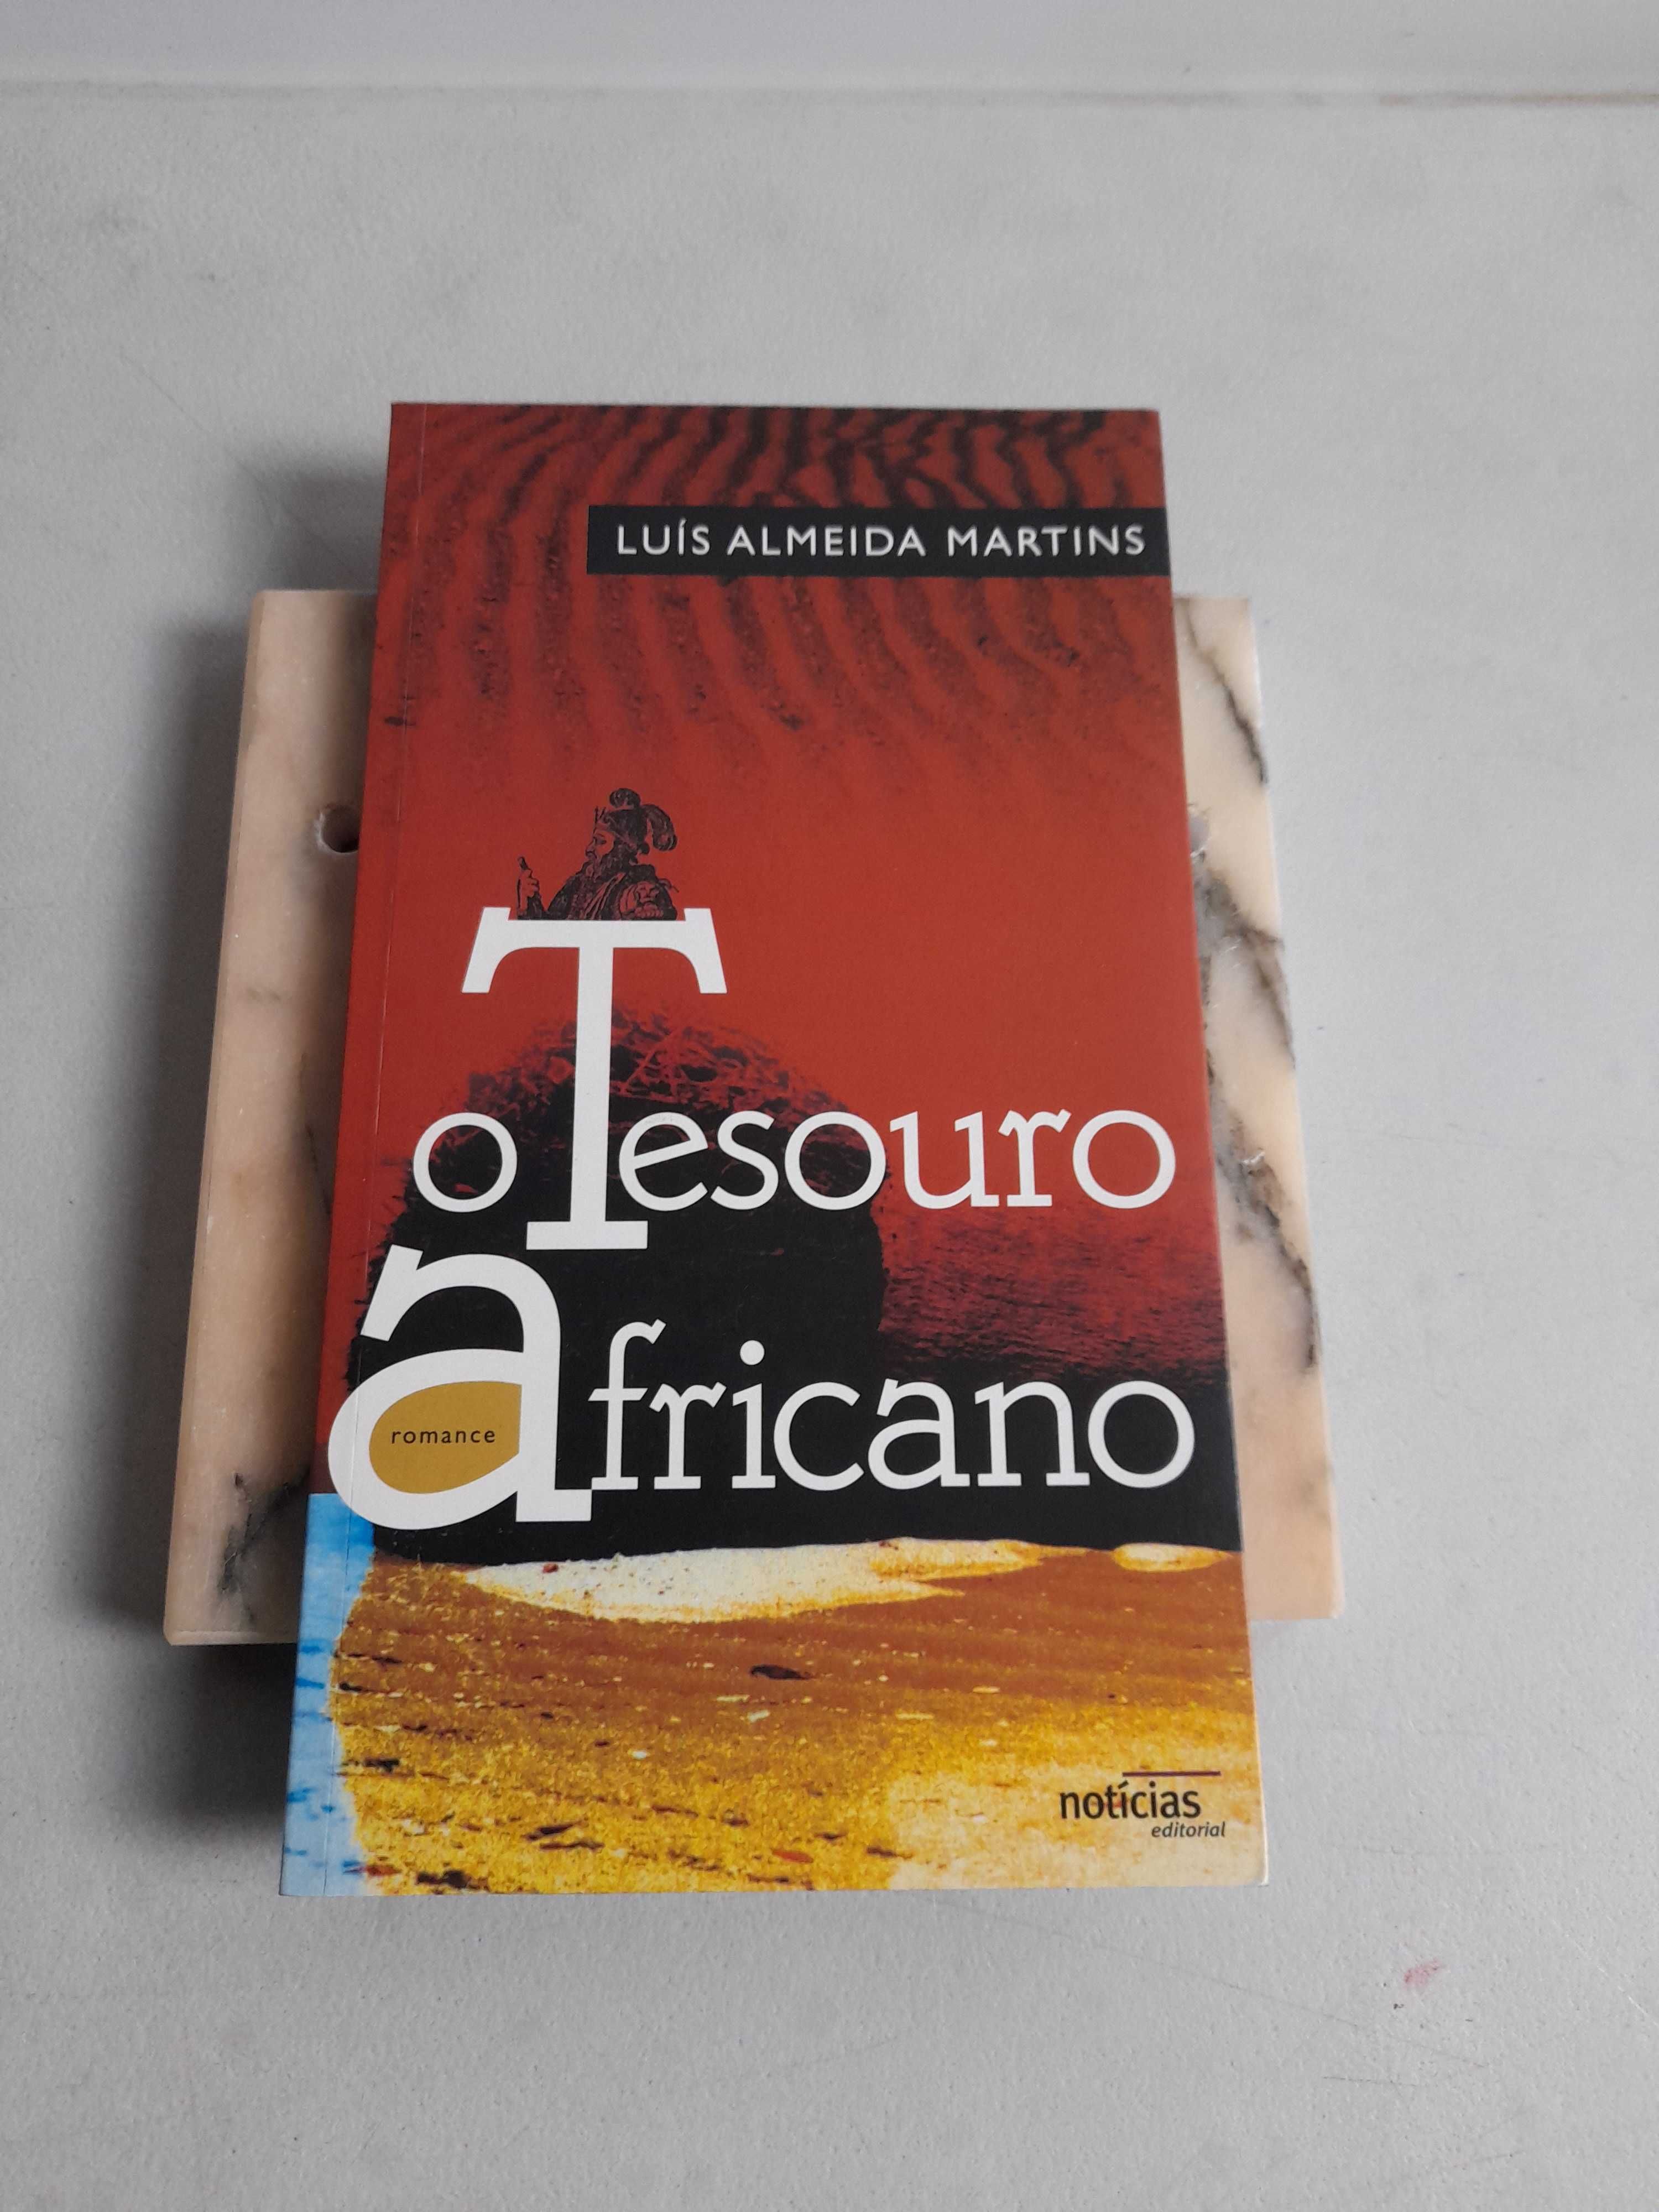 Livro PA-3 -Luís Almeida Martins- O tesouro africano